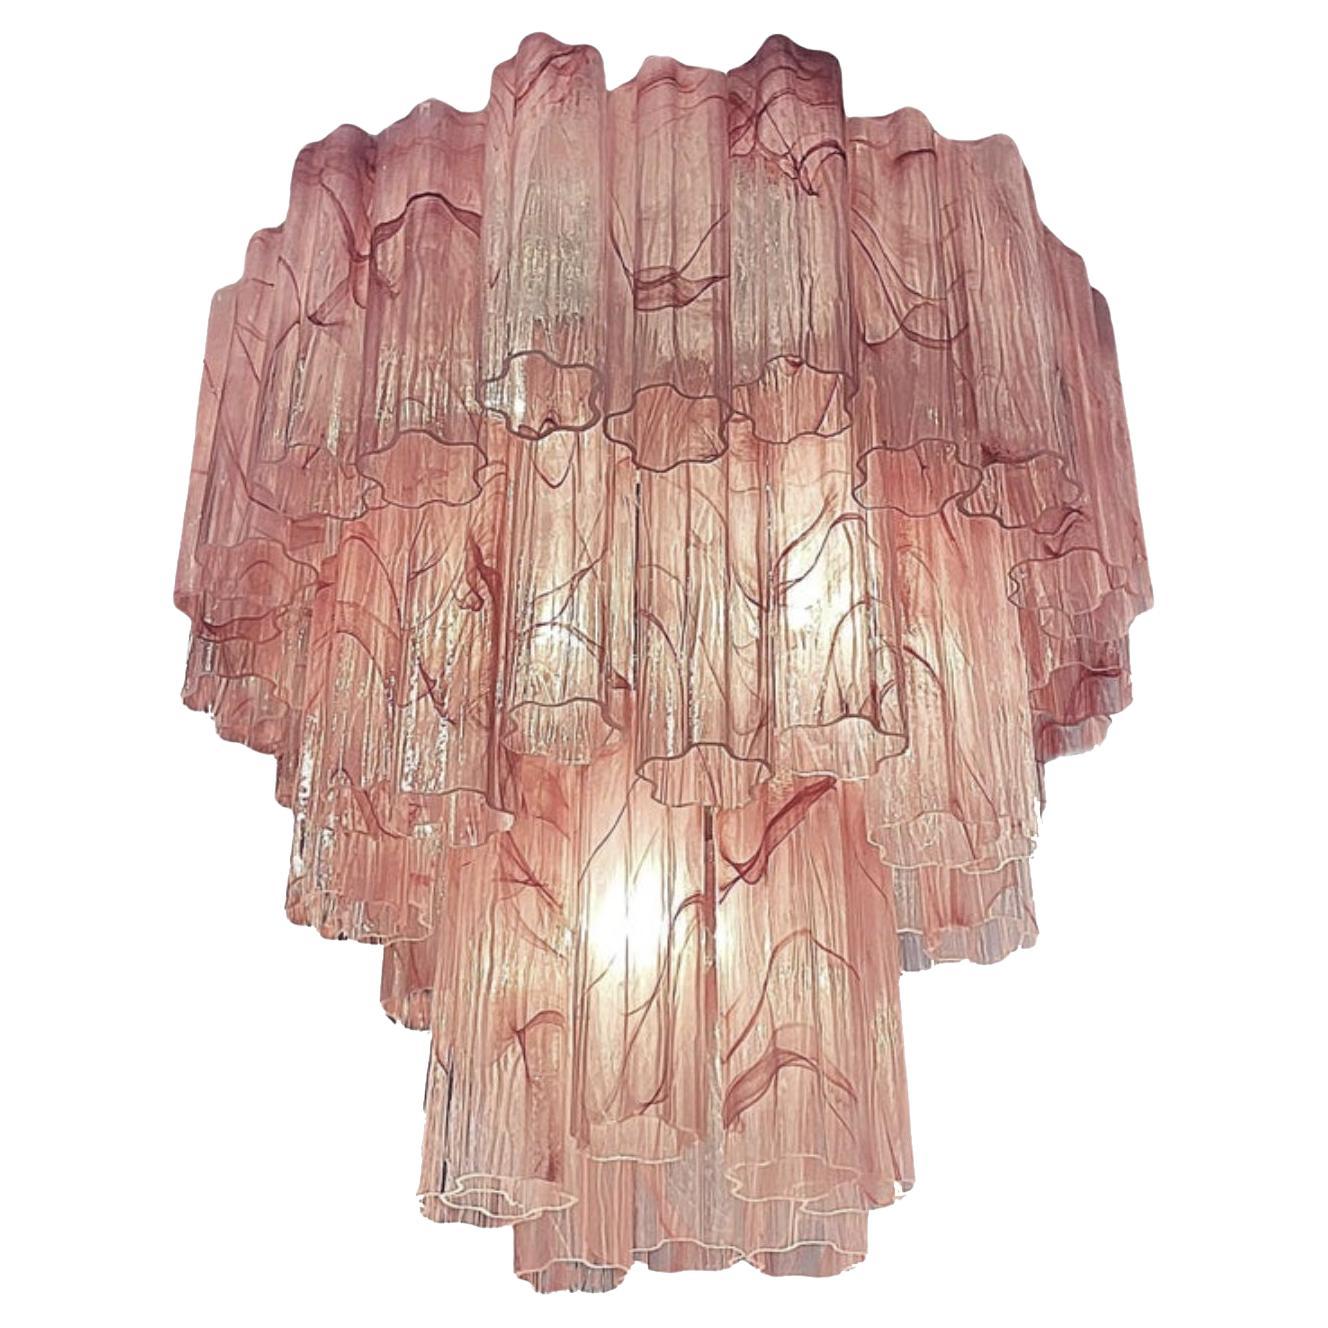 Großer dreistöckiger Muranoglas-Röhren-Kronleuchter aus rosa Alabaster